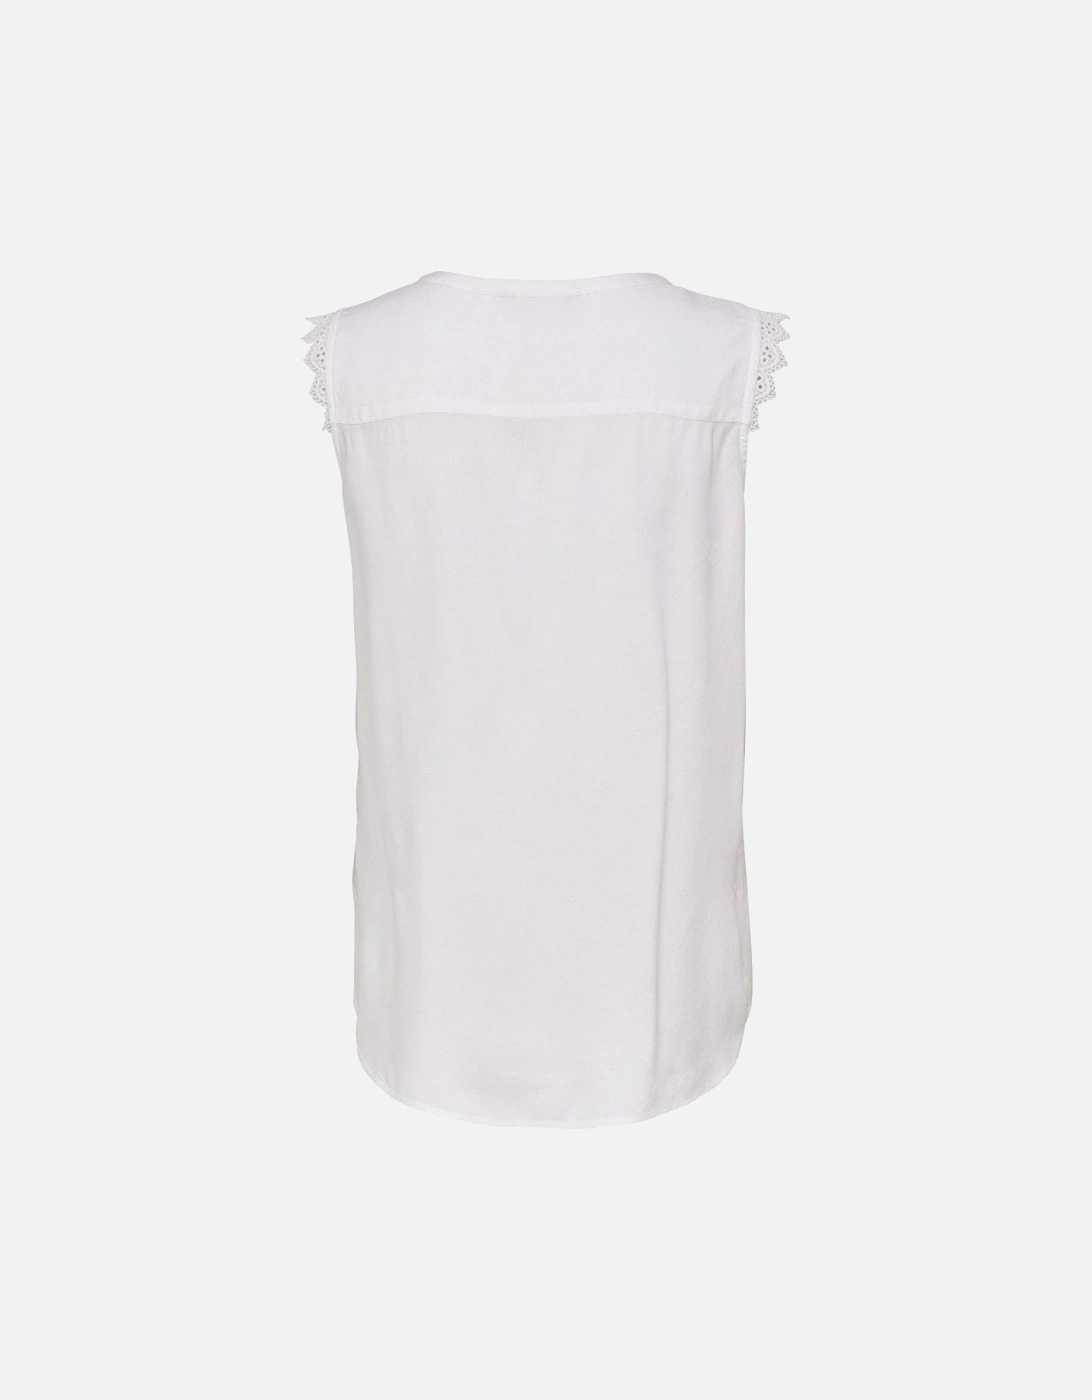 Kimmi Detailed Sleeveless Top - White